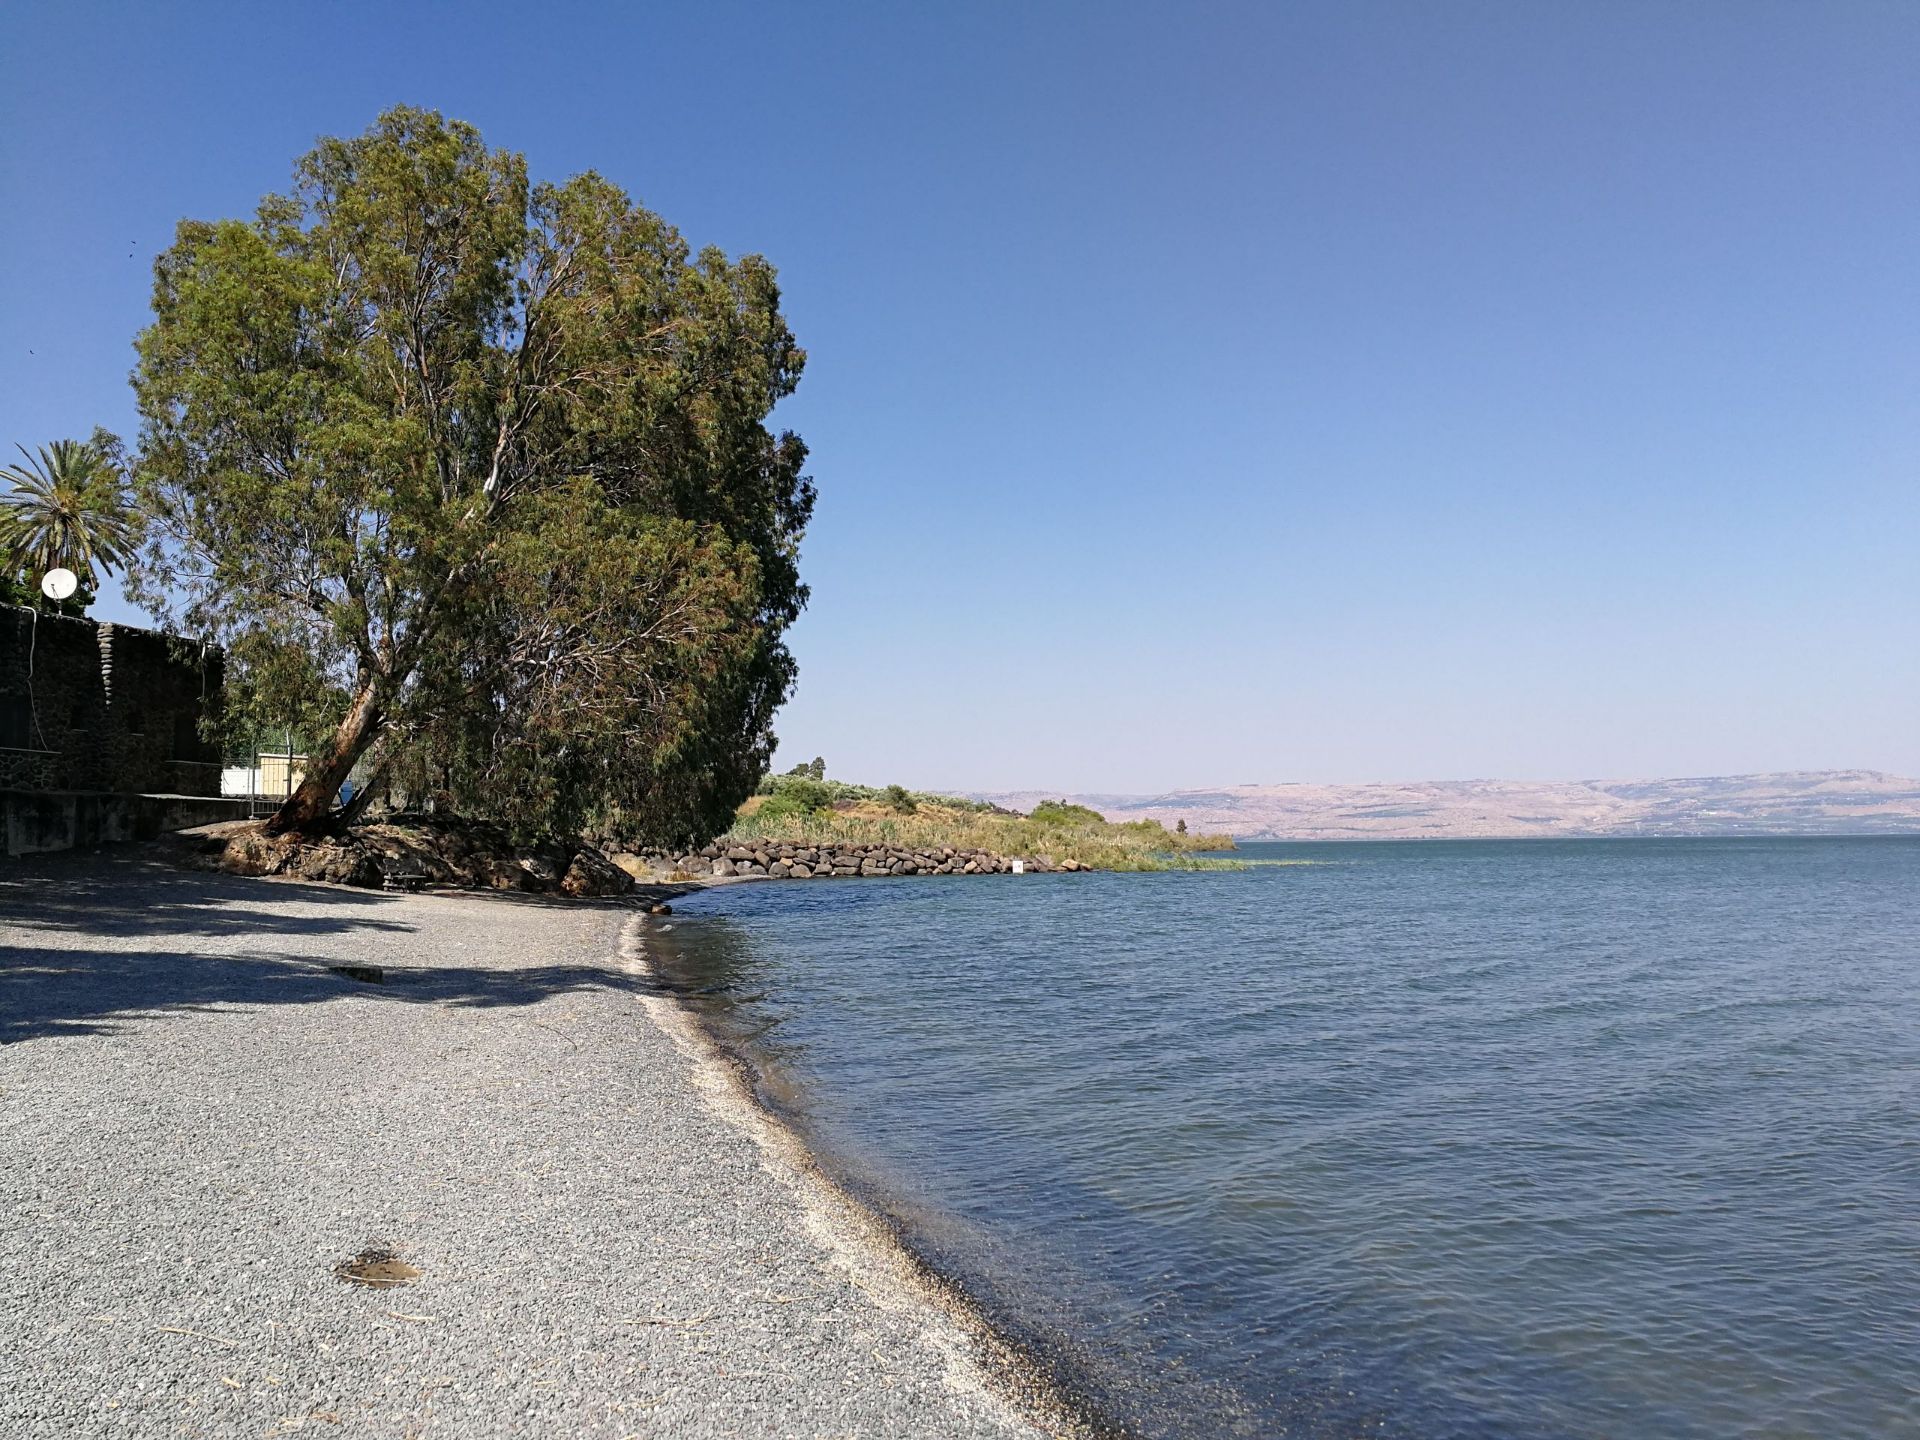 加利利湖是通用的英语称呼，阿拉伯人管它叫“太巴列湖”，因为湖的西侧是着名的旅游城市太巴列，犹太人则称